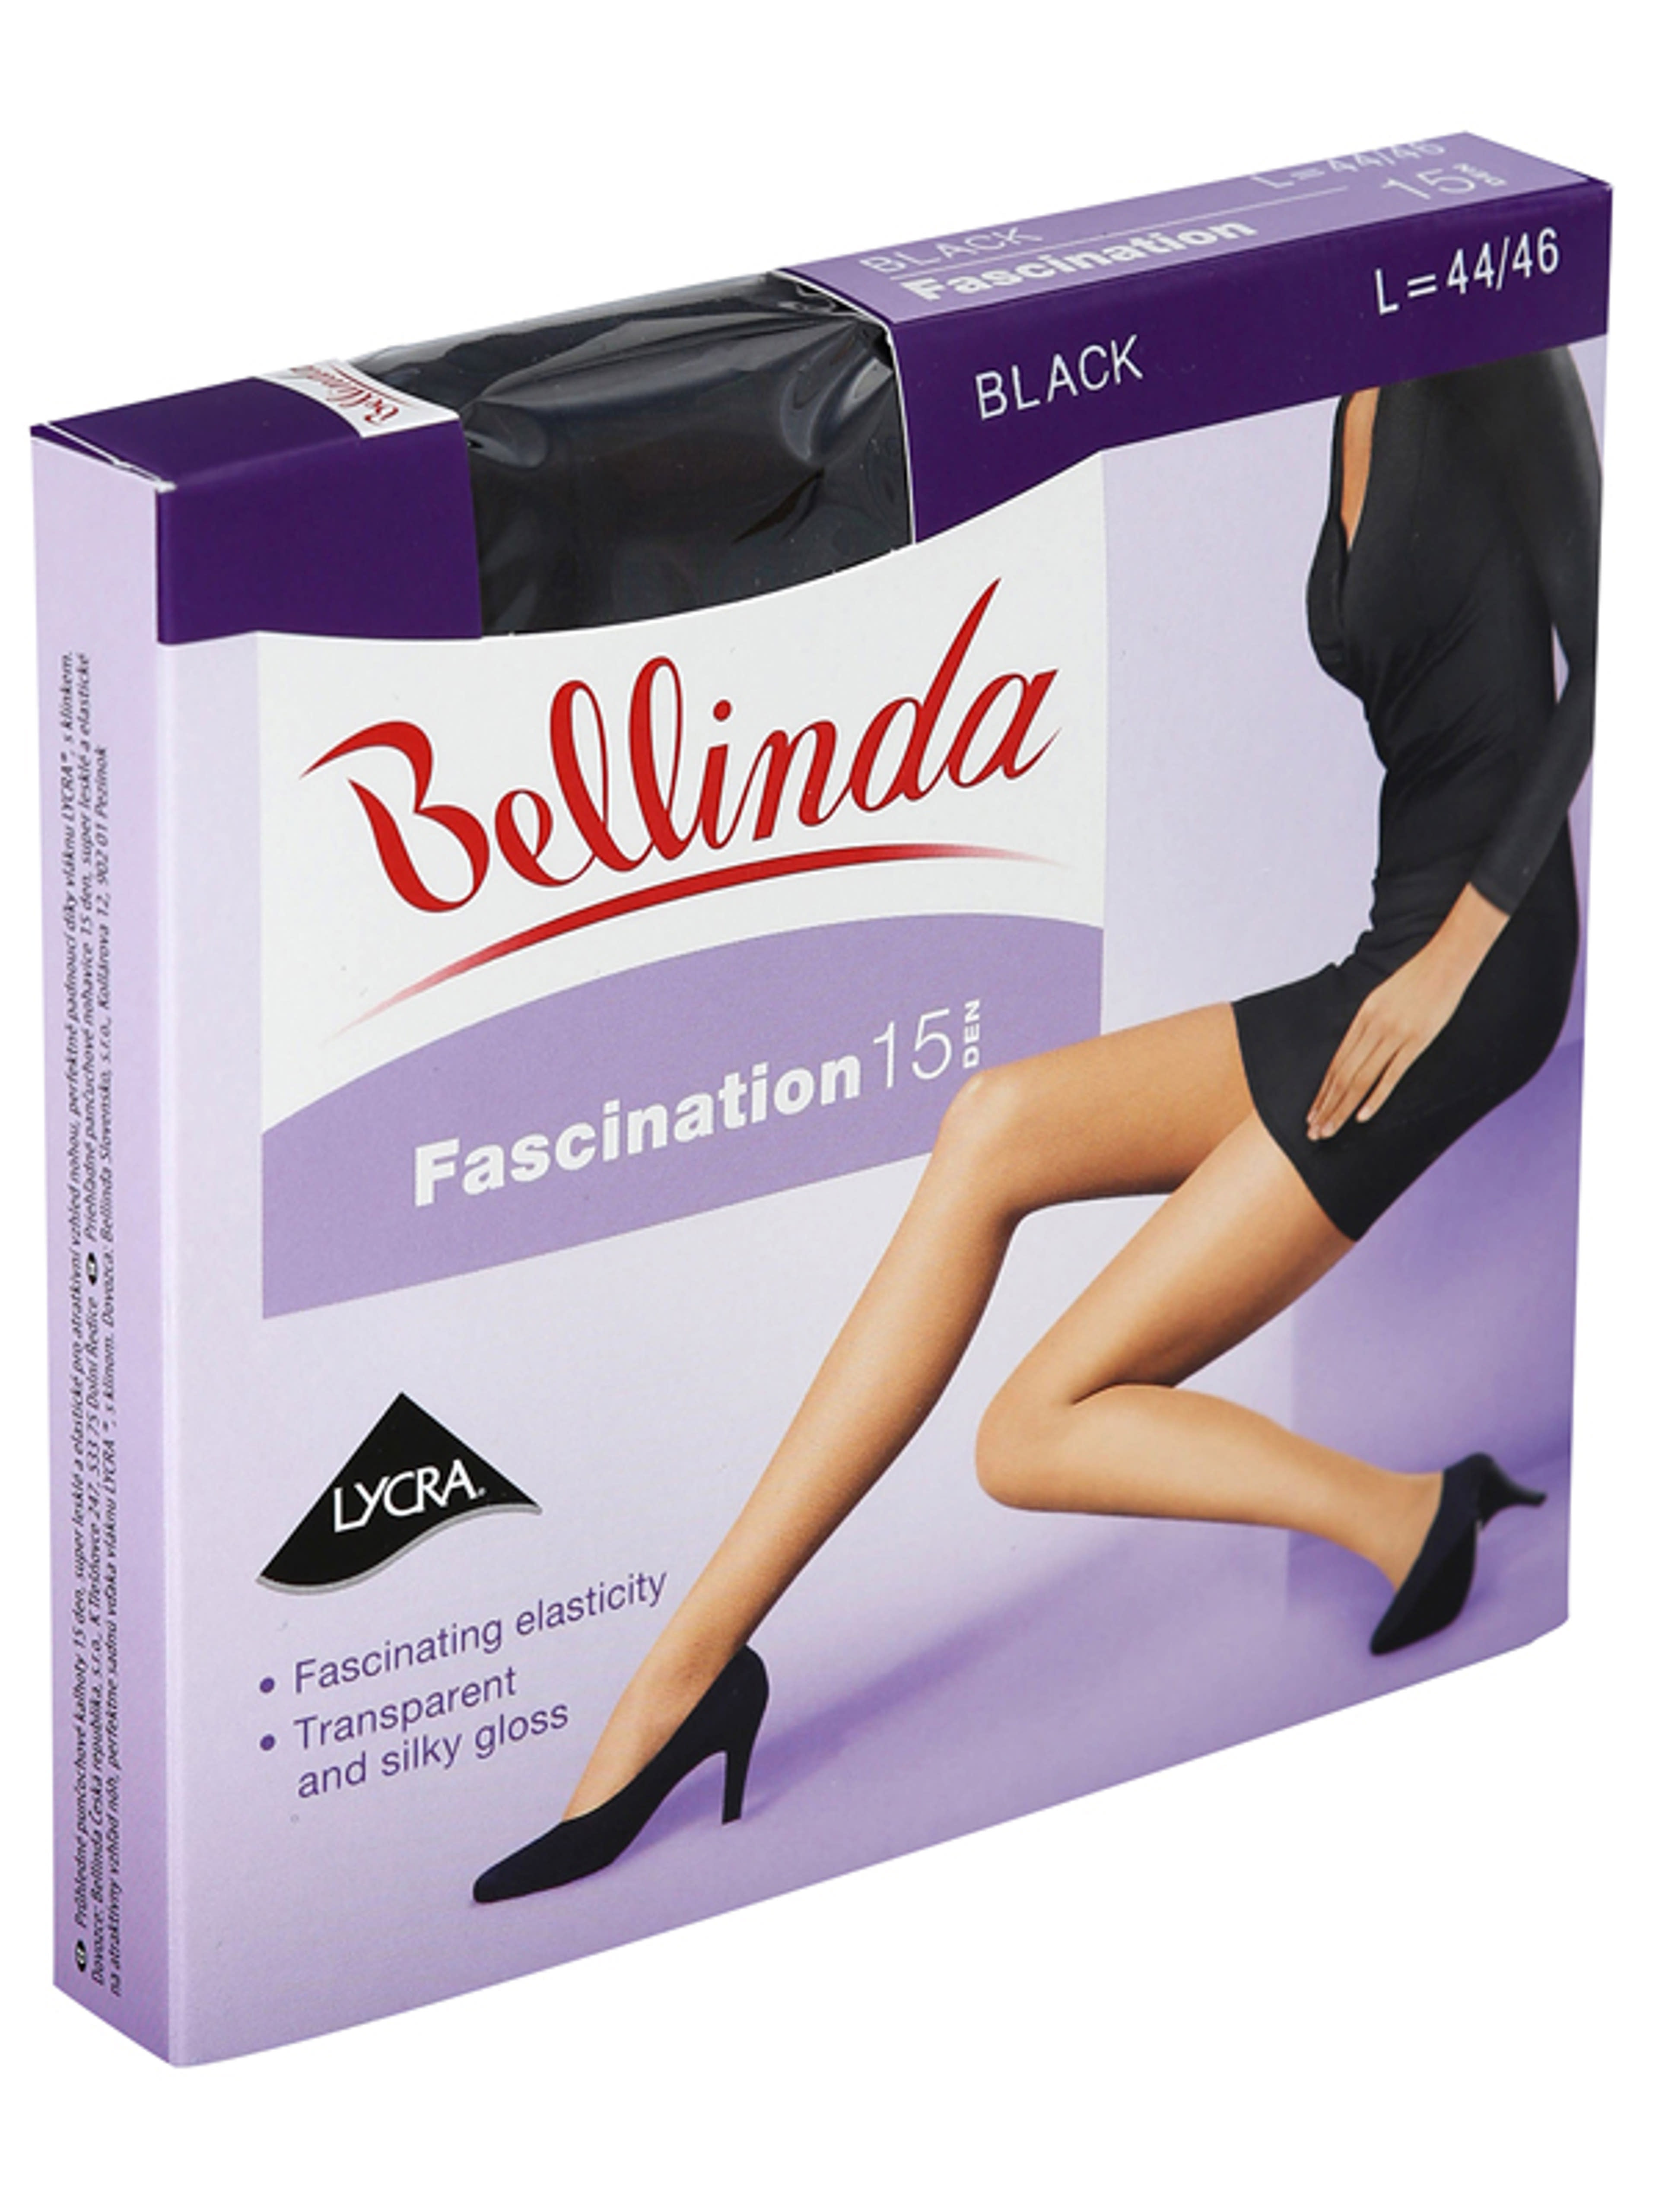 Bellinda Fascination 15 Den Fekete L Harisnya - 1 db